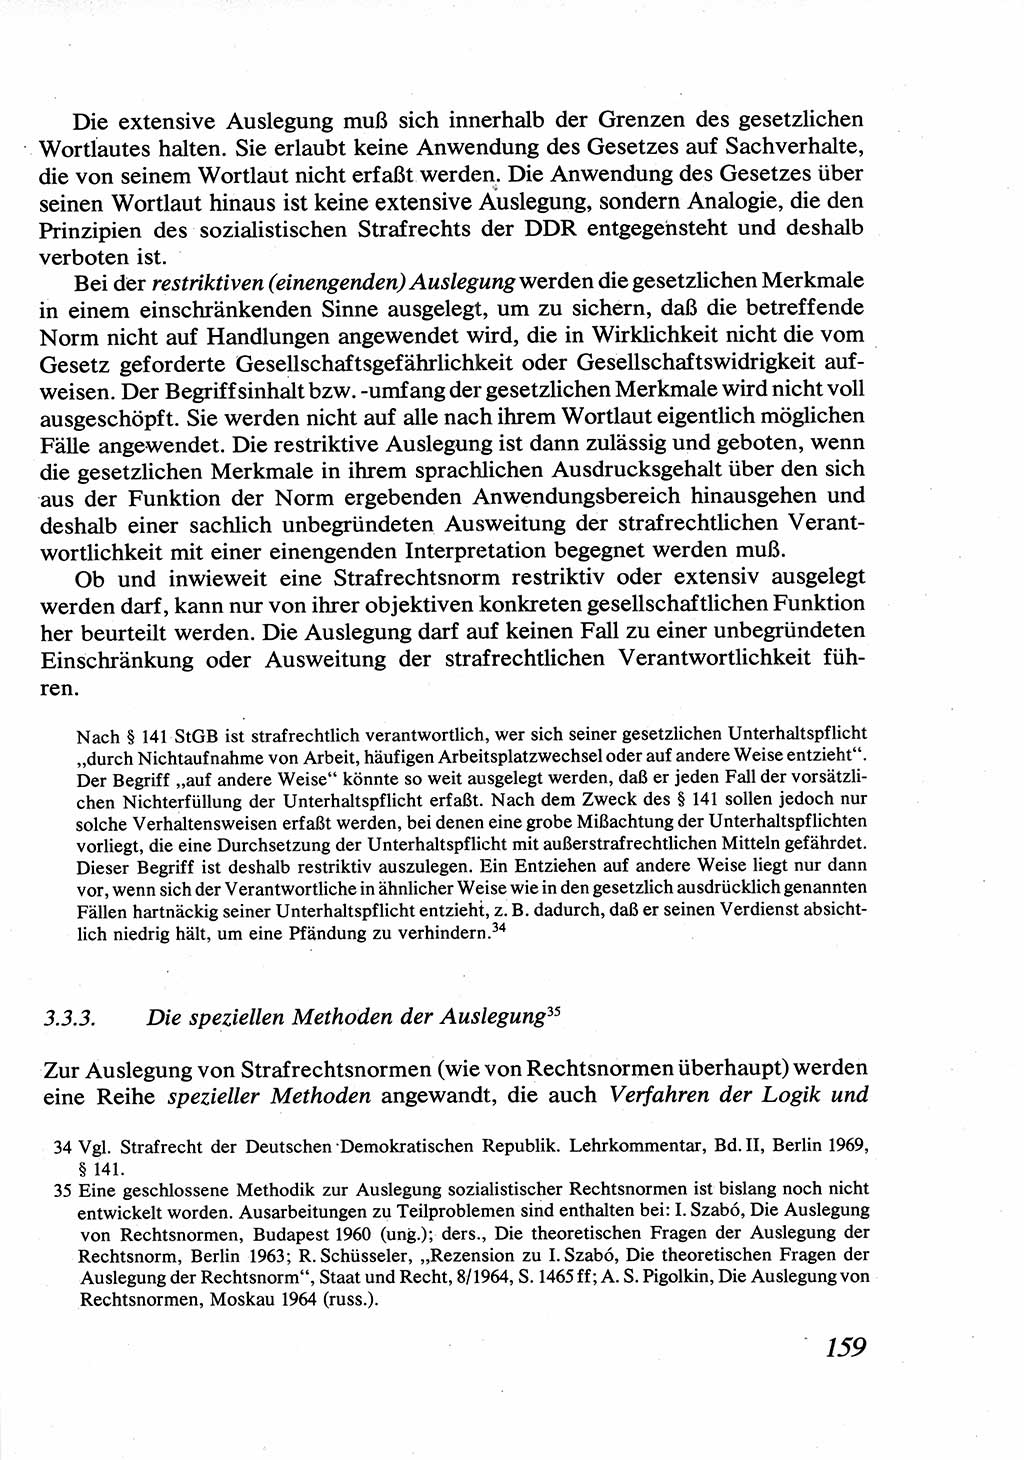 Strafrecht [Deutsche Demokratische Republik (DDR)], Allgemeiner Teil, Lehrbuch 1976, Seite 159 (Strafr. DDR AT Lb. 1976, S. 159)